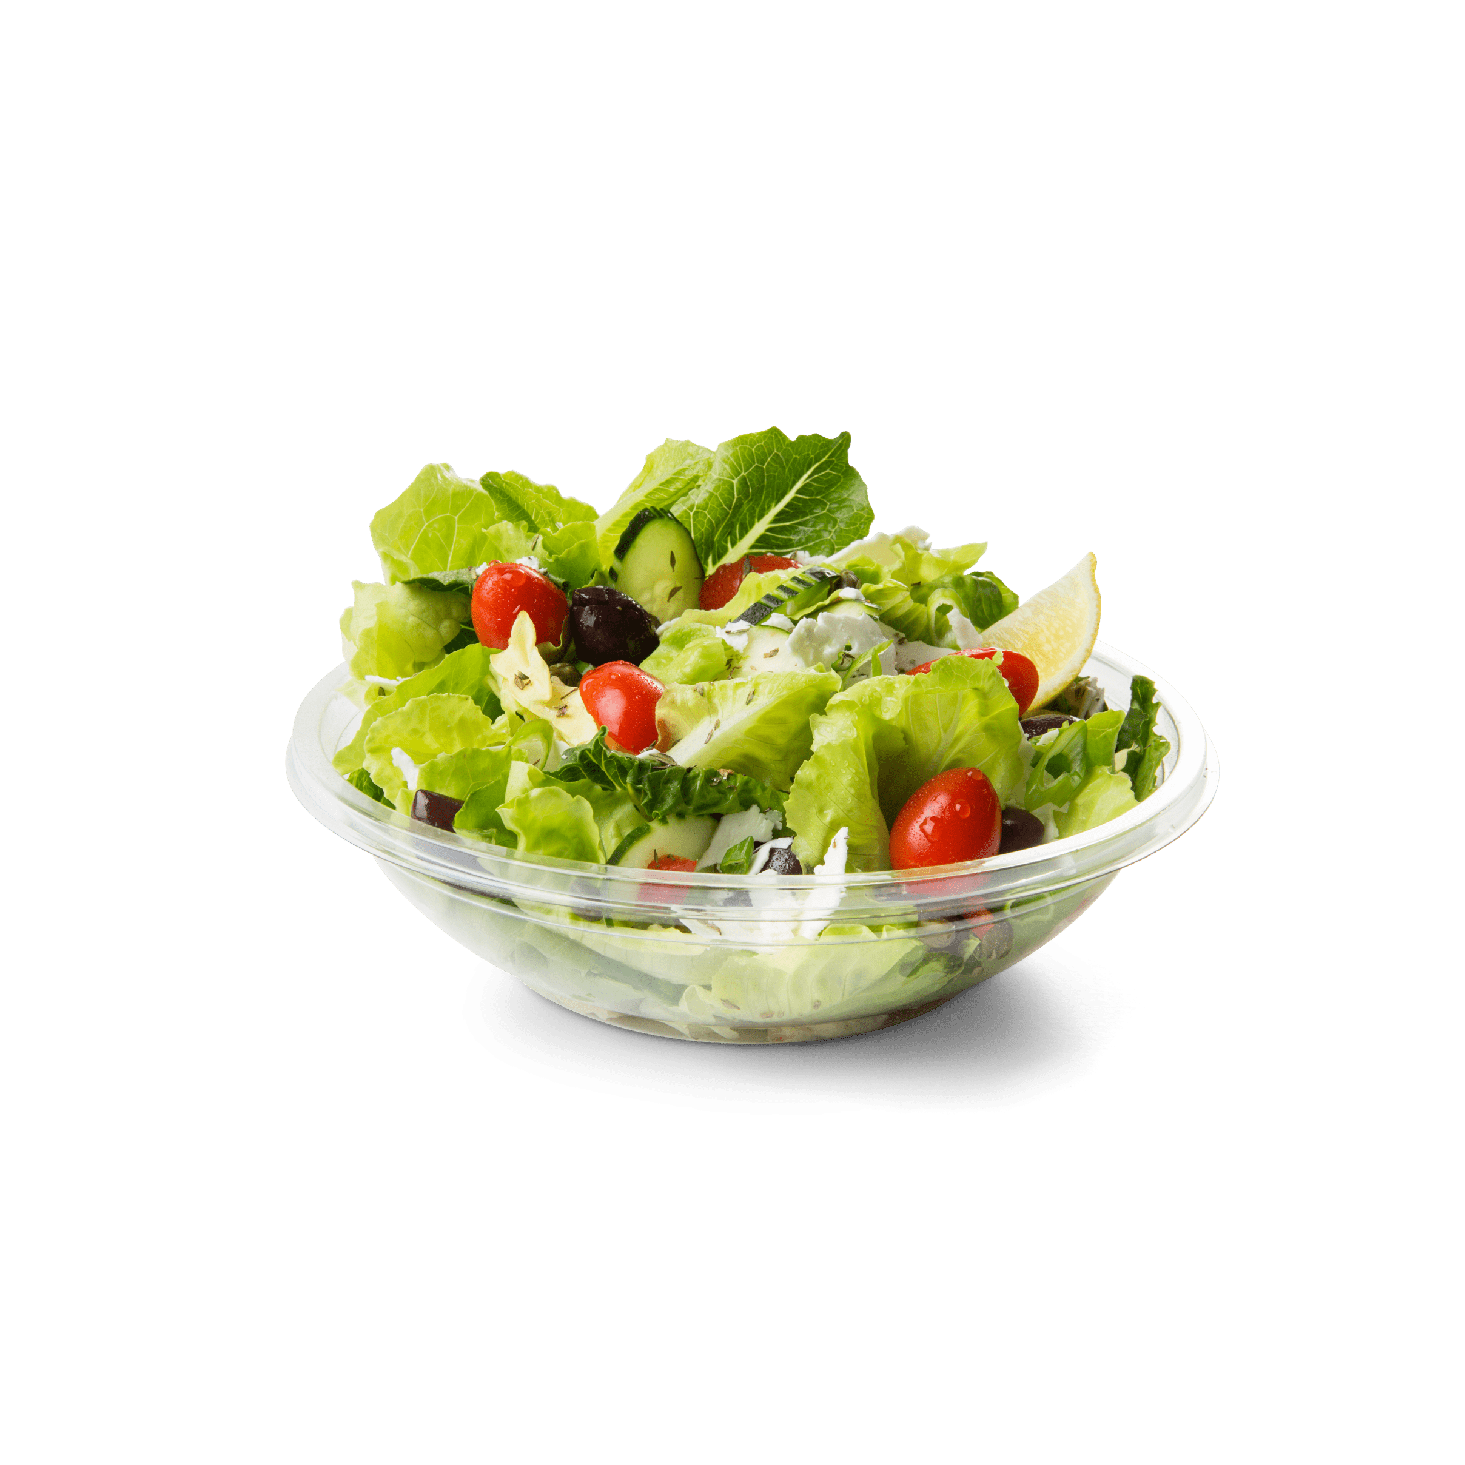 Salad PNG Image in Transparent pngteam.com